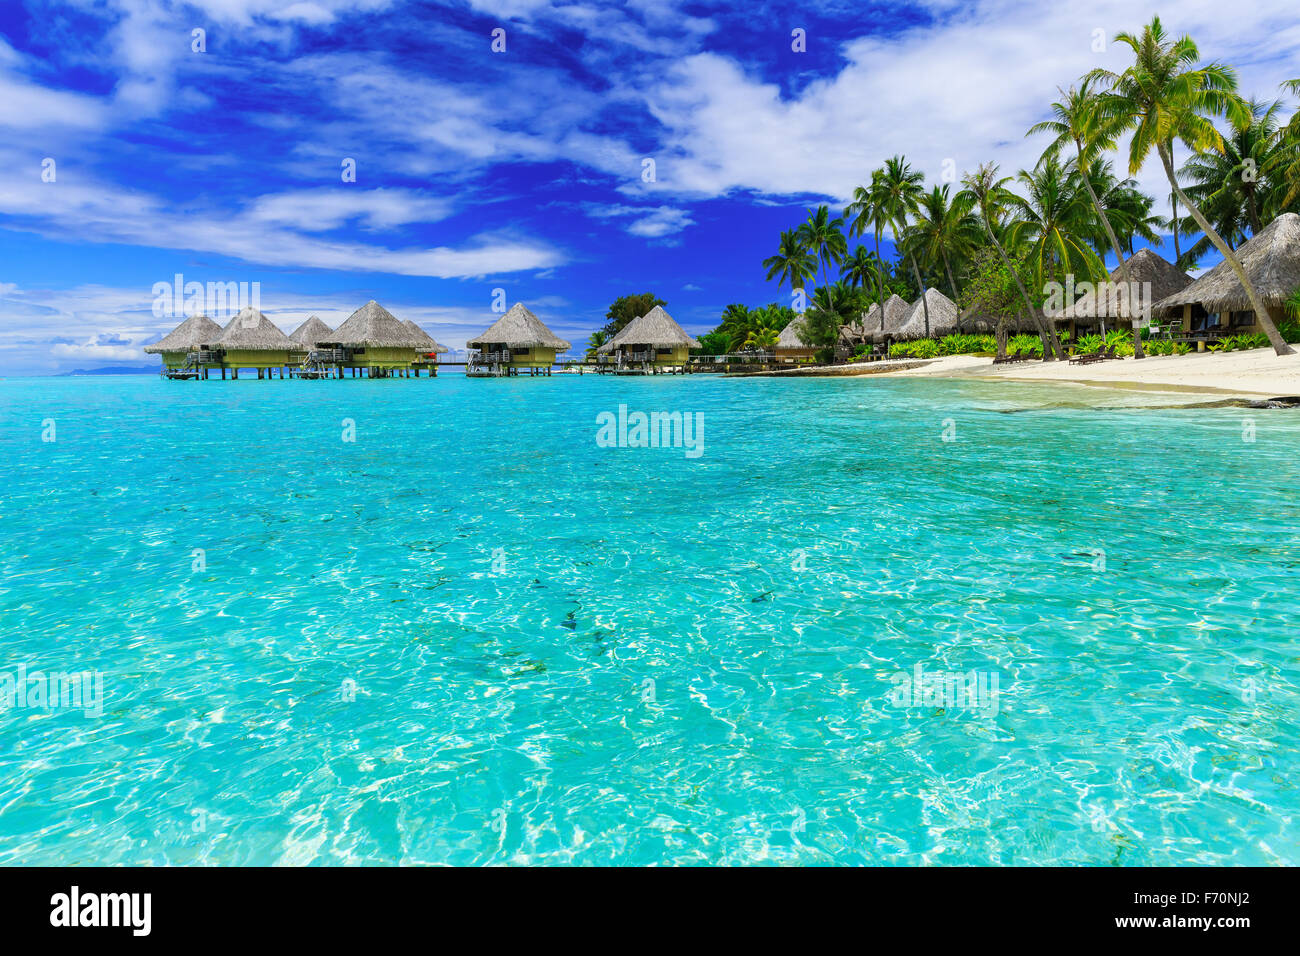 Bungalow sull'acqua di lusso resort tropicale, isola di Bora Bora, vicino a Tahiti, Polinesia francese, oceano pacifico Foto Stock